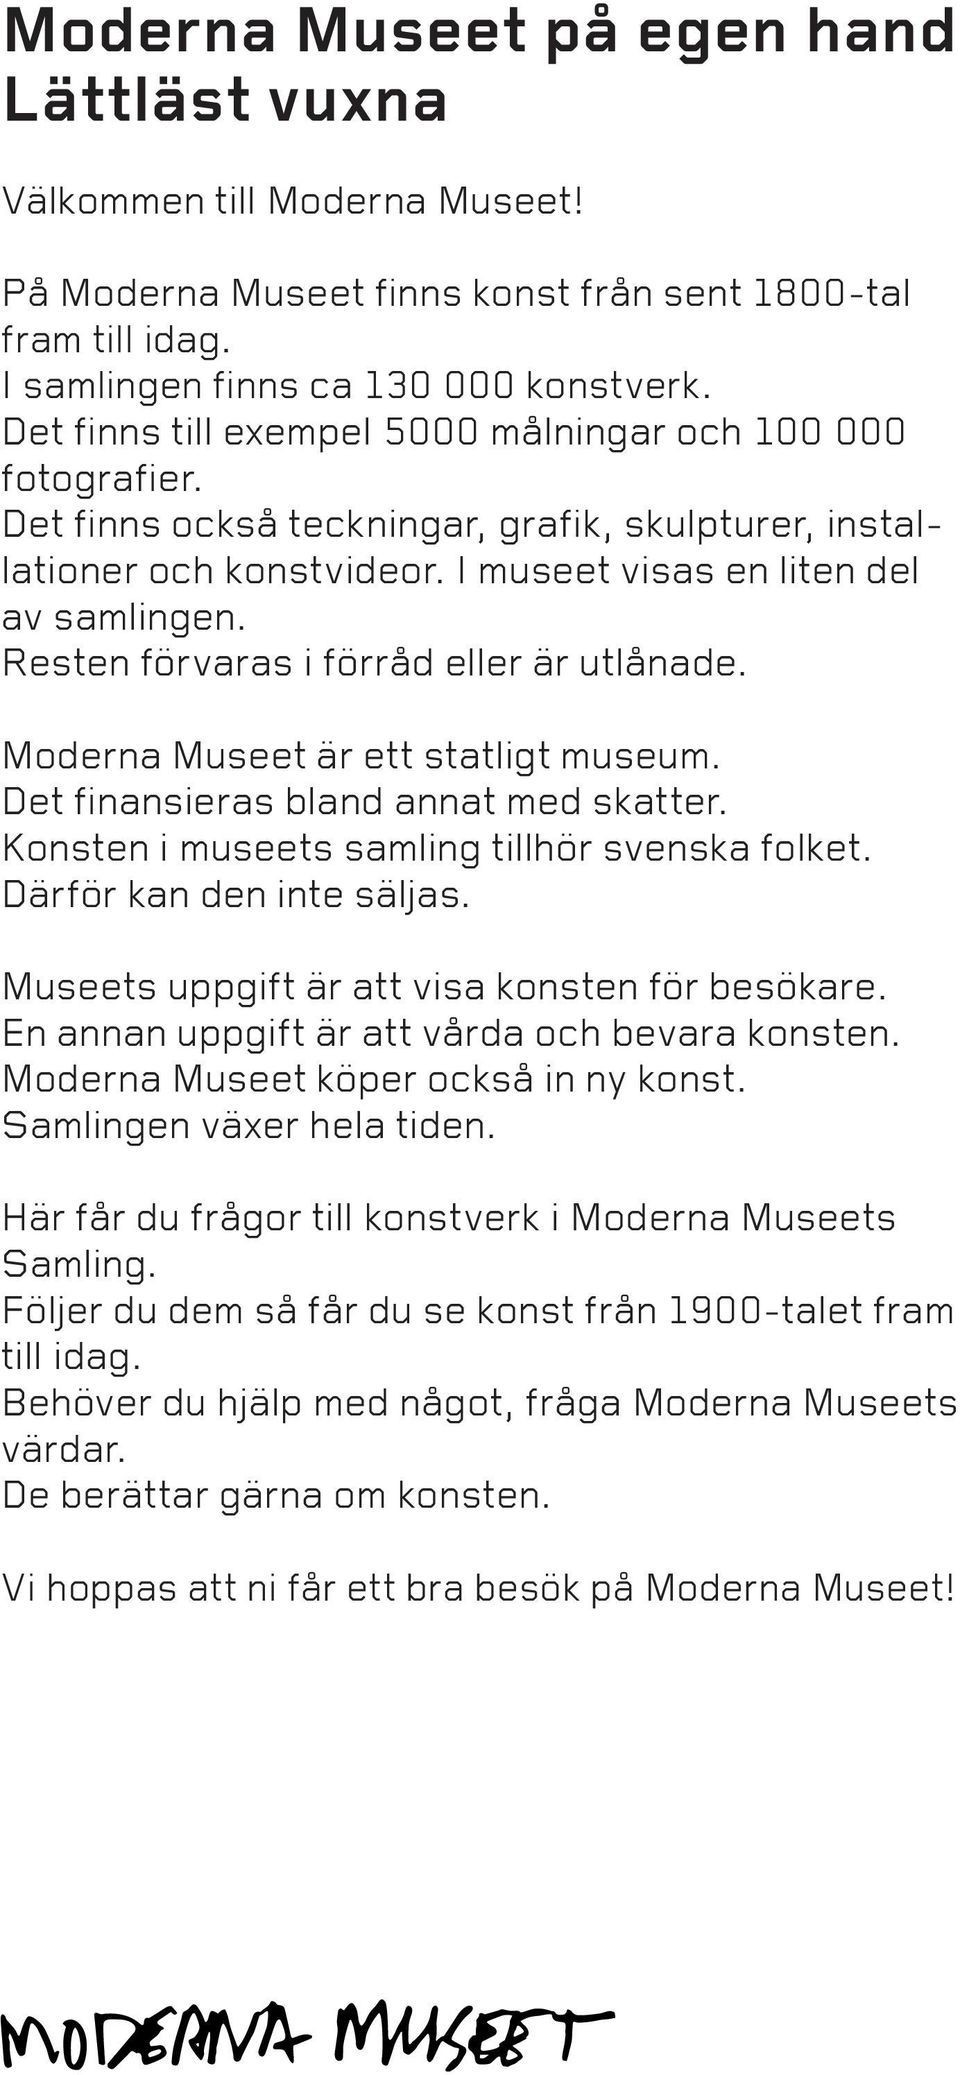 Resten förvaras i förråd eller är utlånade. Moderna Museet är ett statligt museum. Det finansieras bland annat med skatter. Konsten i museets samling tillhör svenska folket.